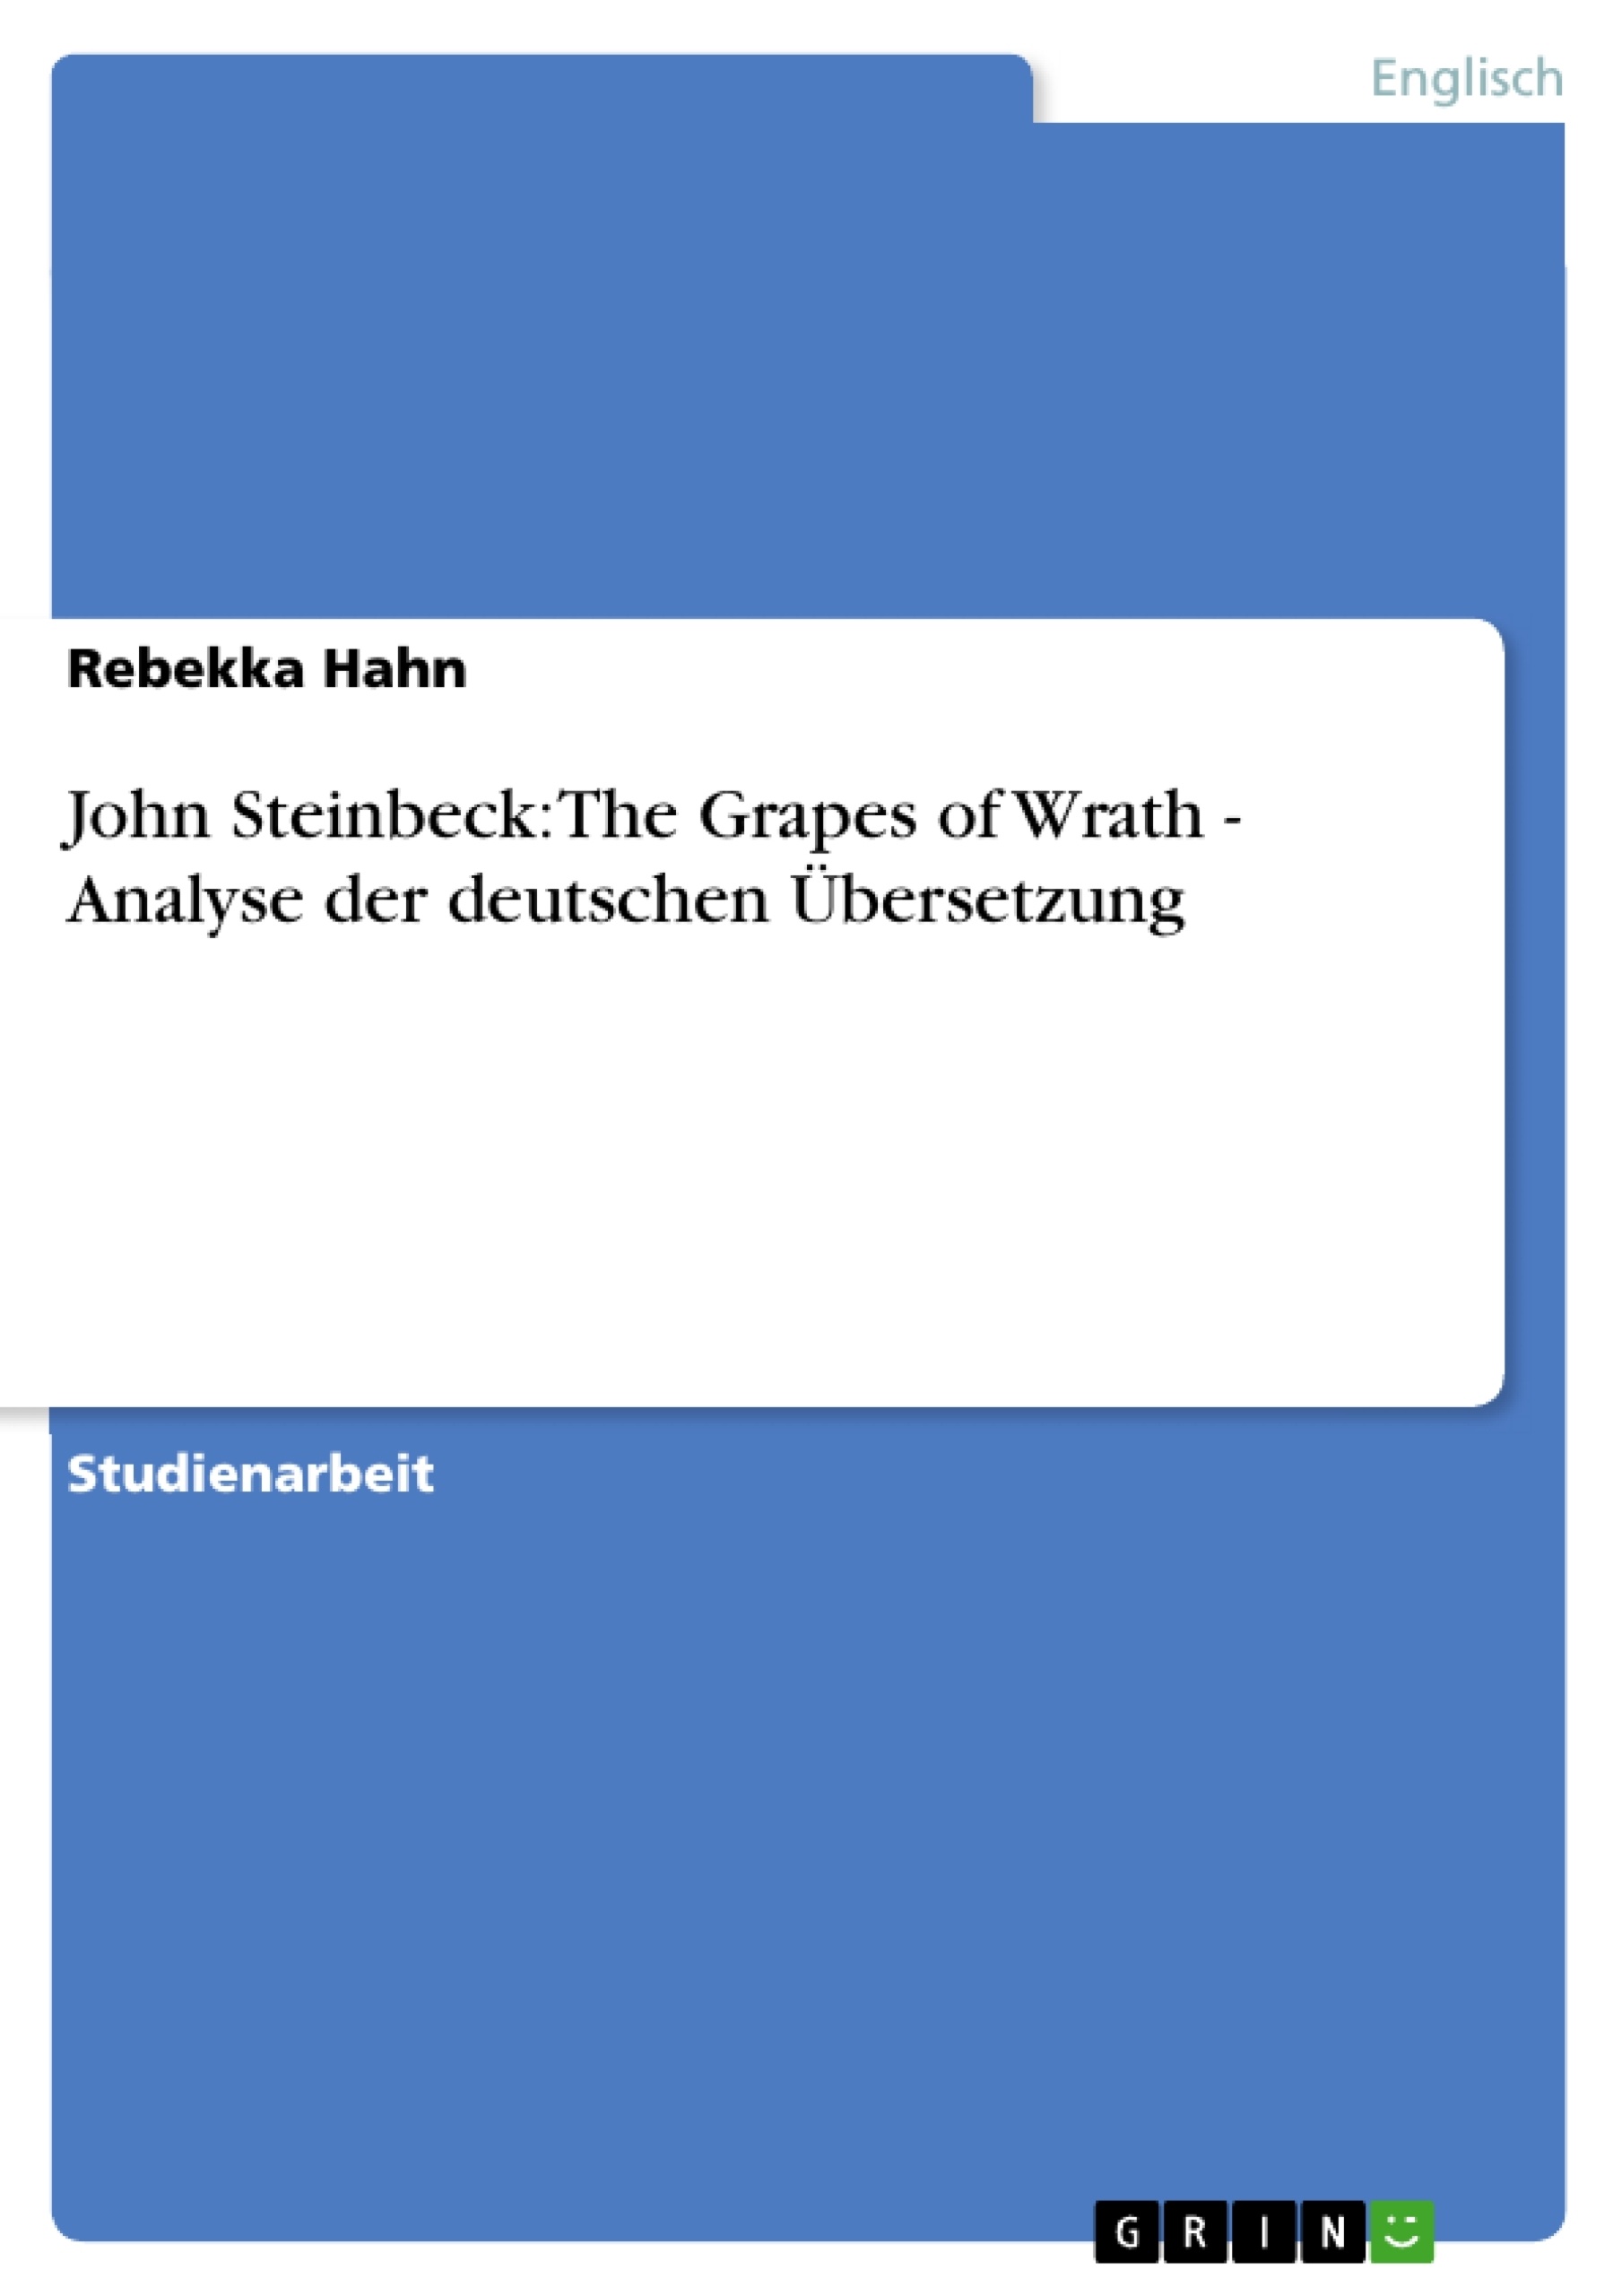 Título: John Steinbeck: The Grapes of Wrath - Analyse der deutschen Übersetzung 